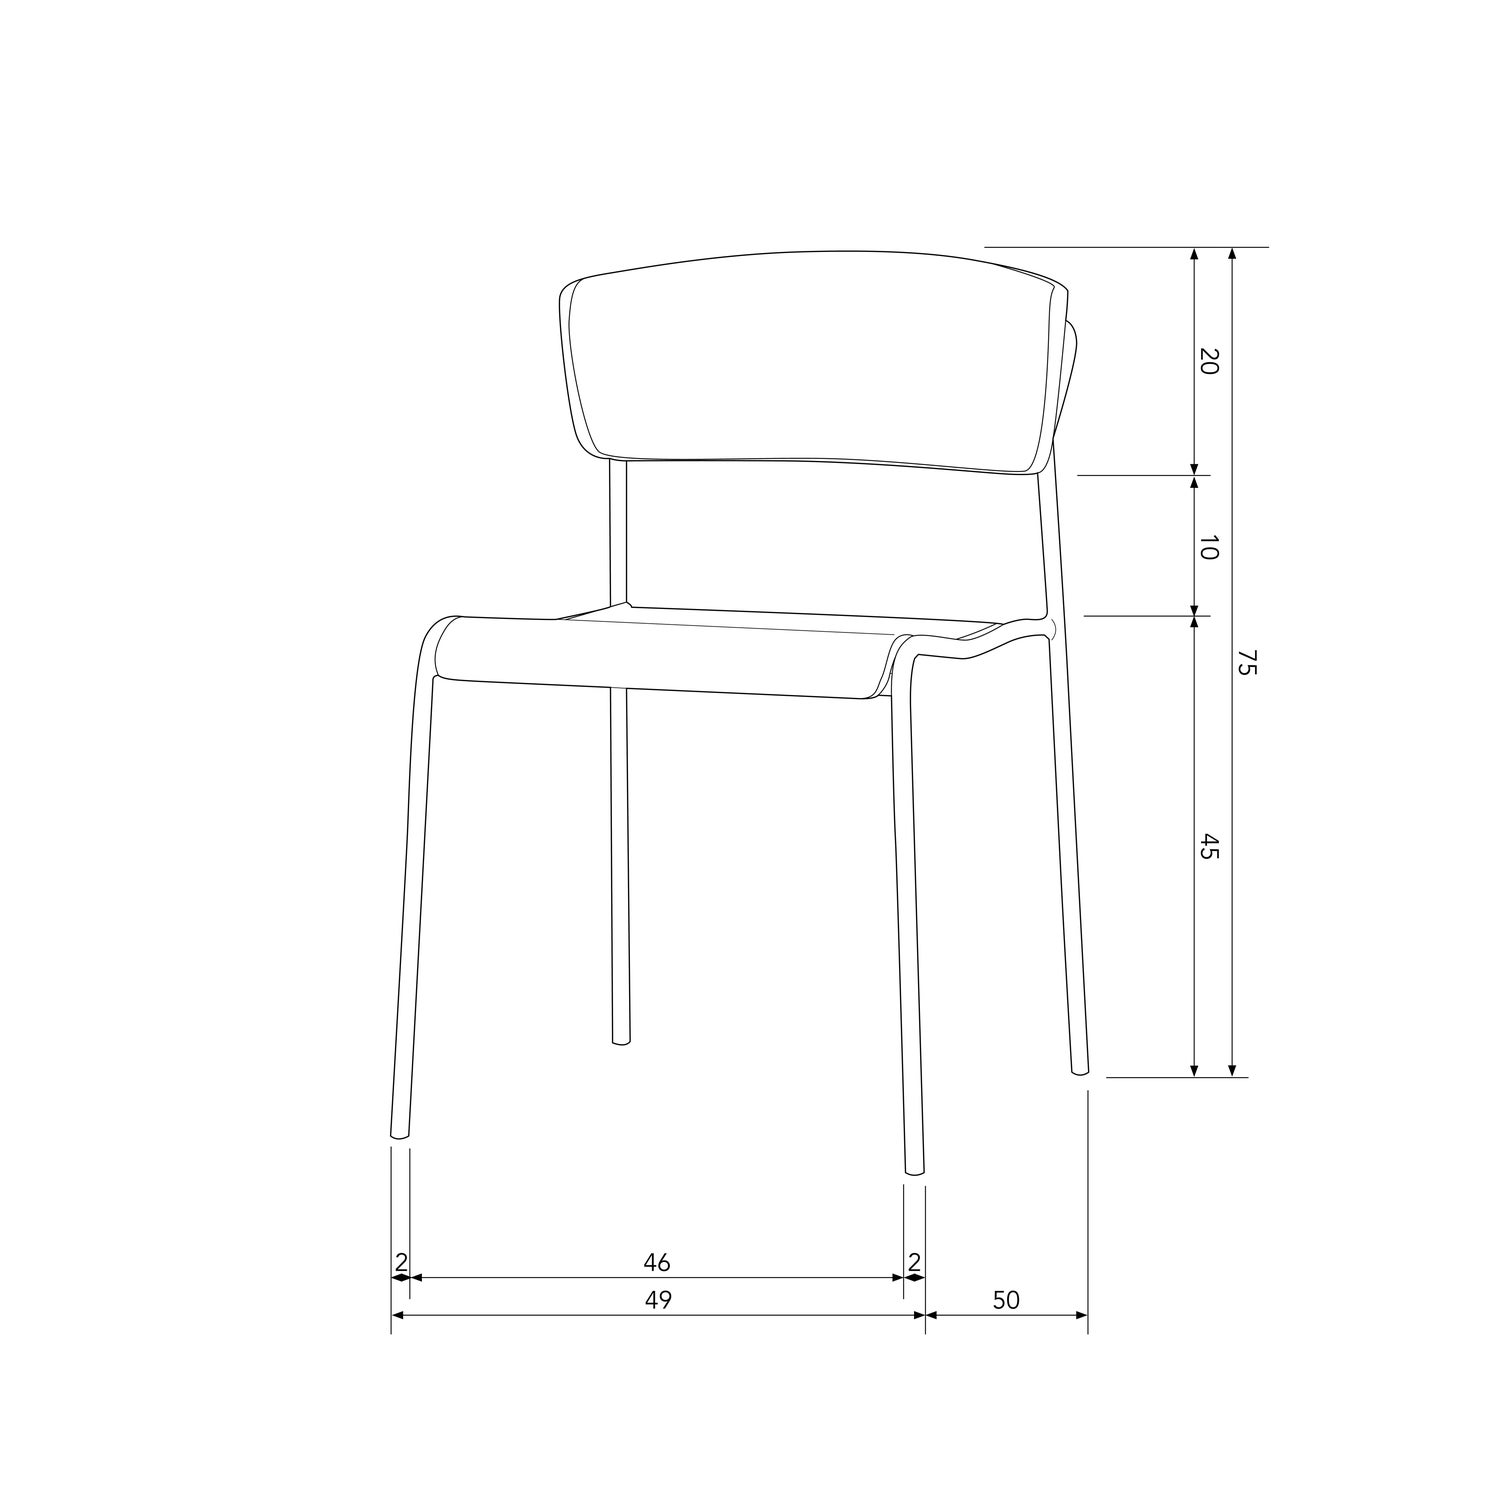 377331-B-50_BT_Ciro_dining_chair.jpg?auto=webp&format=png&width=1500&height=1500